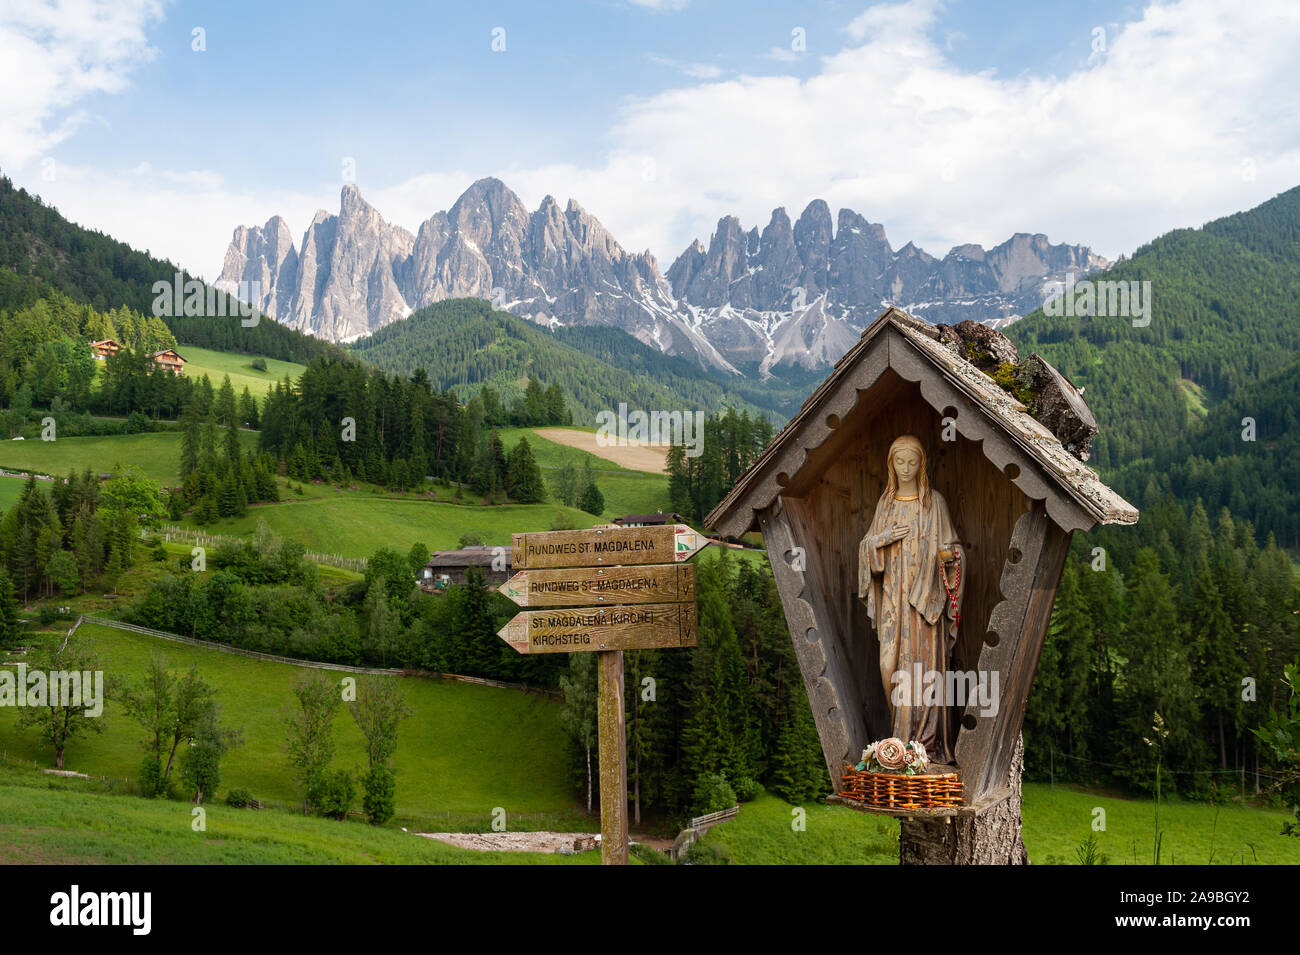 20.06.2019, Villnoess, Alto Adige, Italia - Il parco in Villnoesstal con le montagne delle Dolomiti del Puez Odle. 0SL190620D002CA Foto Stock